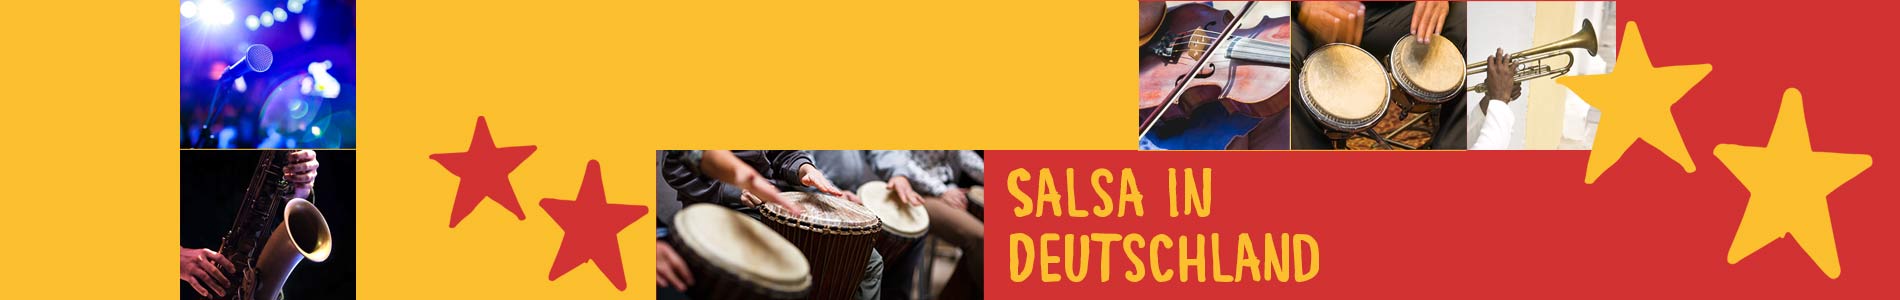 Salsa in Dannenberg – Salsa lernen und tanzen, Tanzkurse, Partys, Veranstaltungen